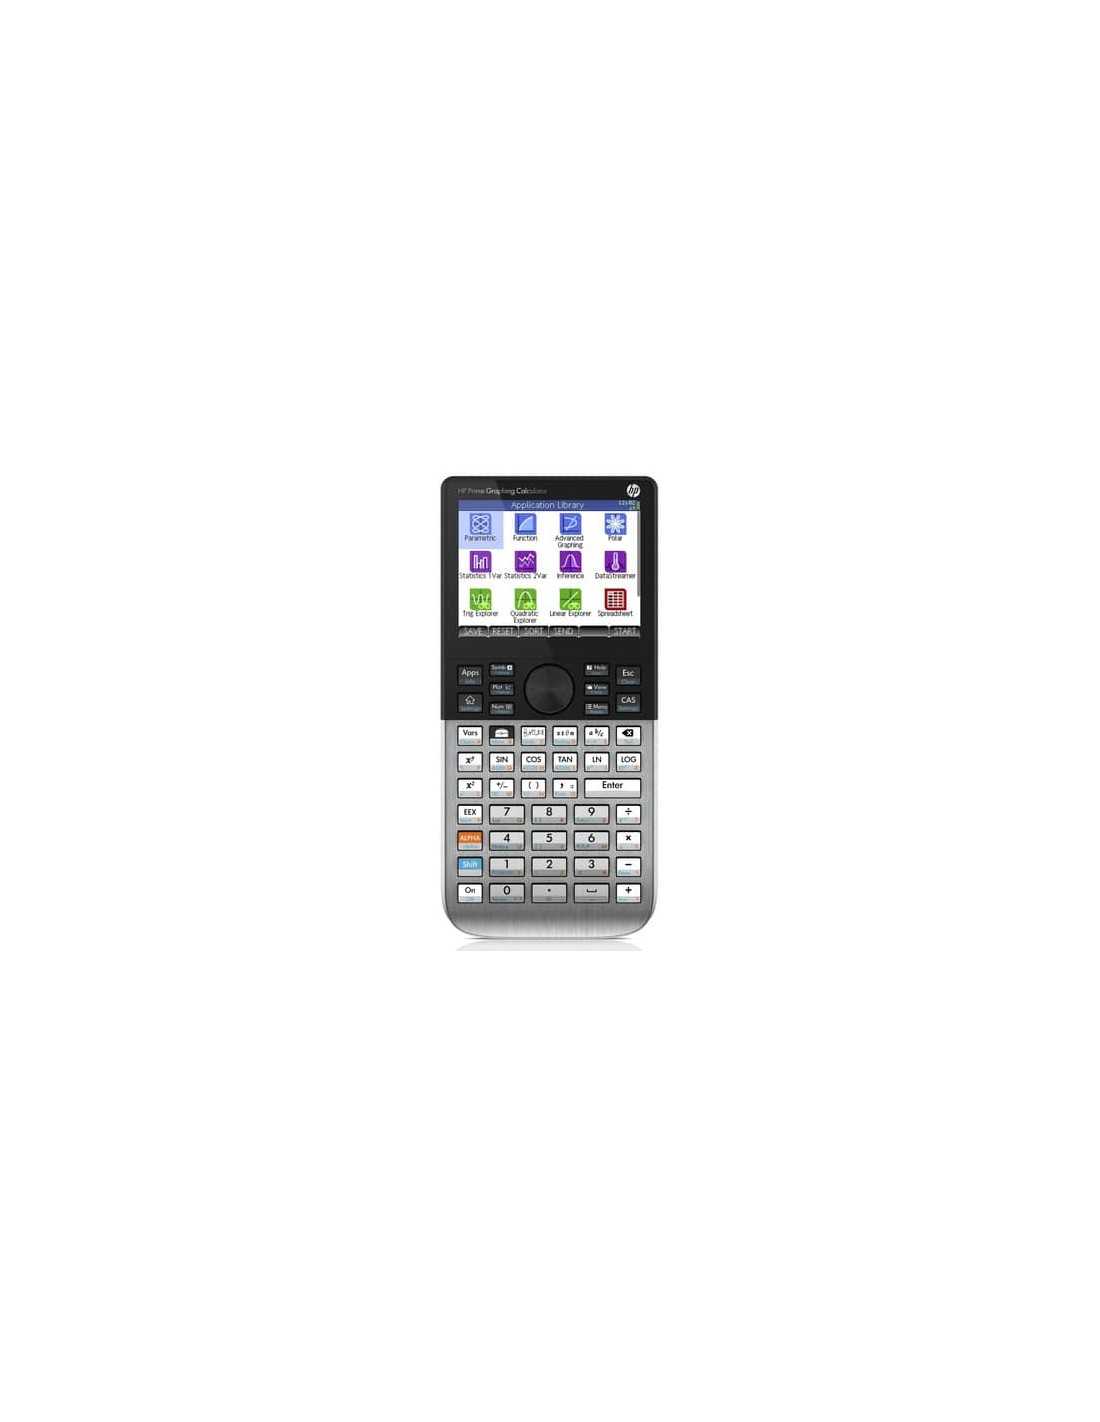 Calcolatrice scientifica programmabile HP Prime G2 schermo a colori da 8,9  cm nero/argento - HP-PRIME V2/B1S